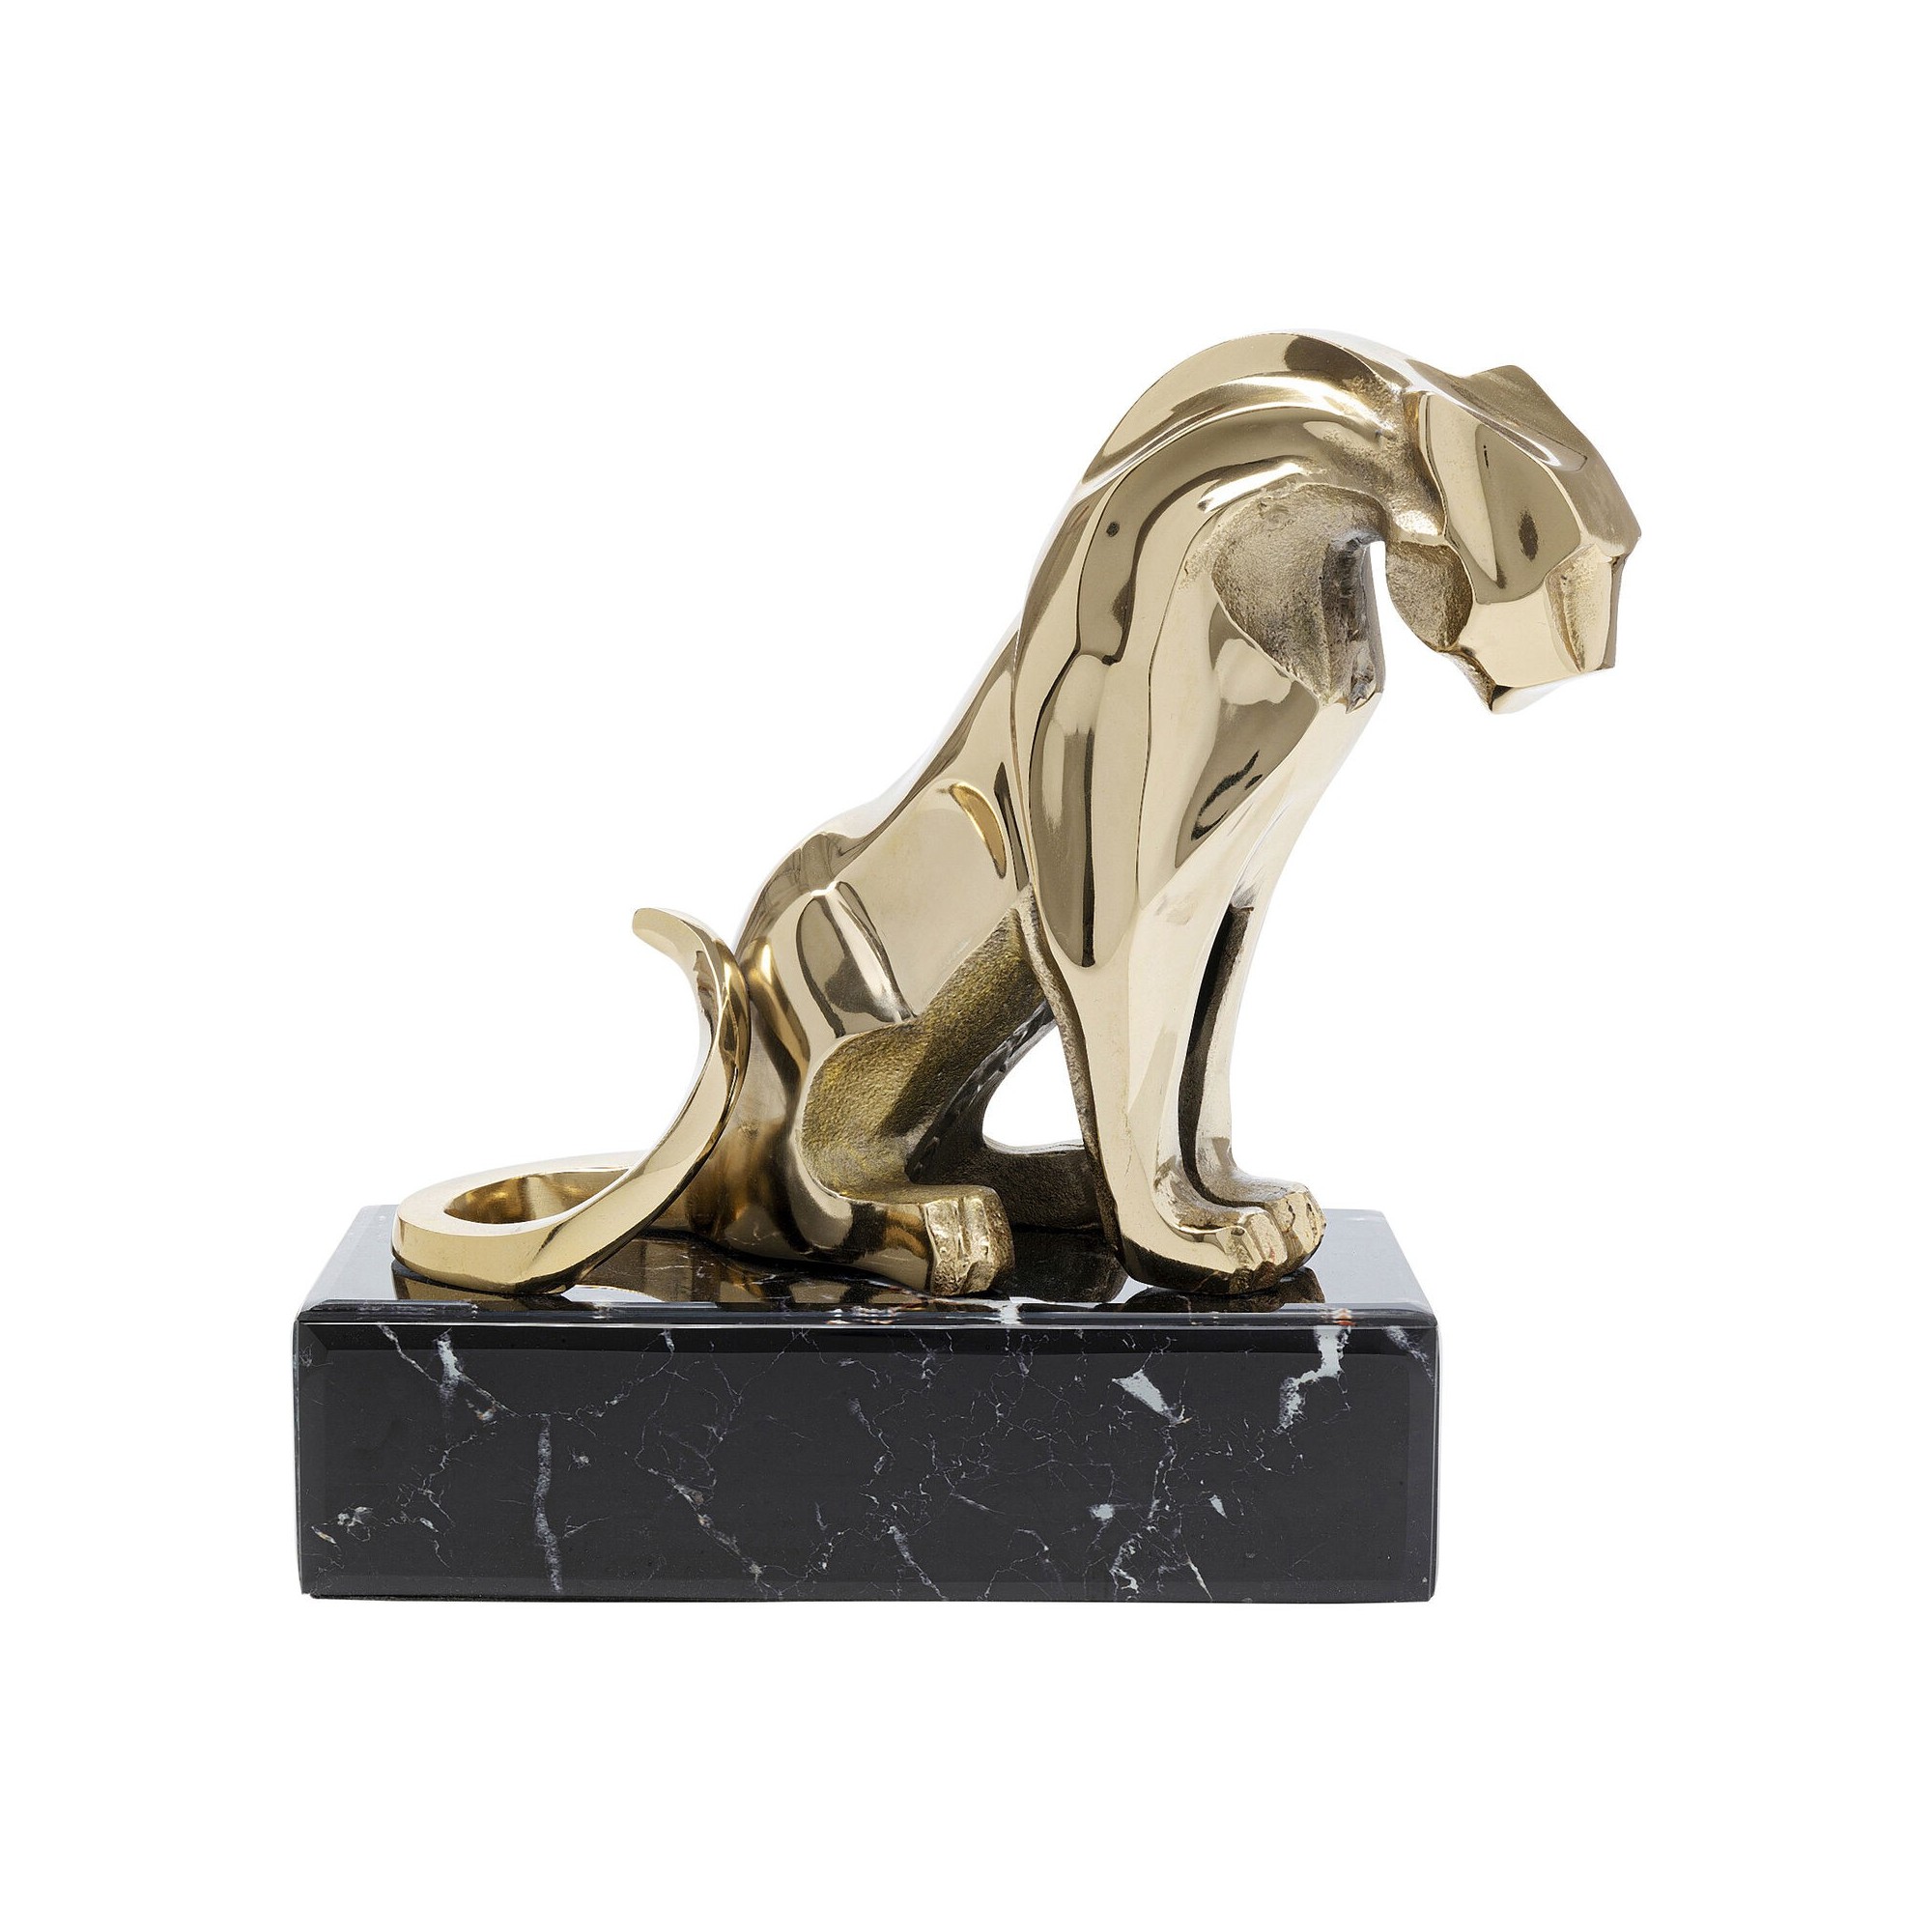 Figurine décorative Lion on Marble 34cm